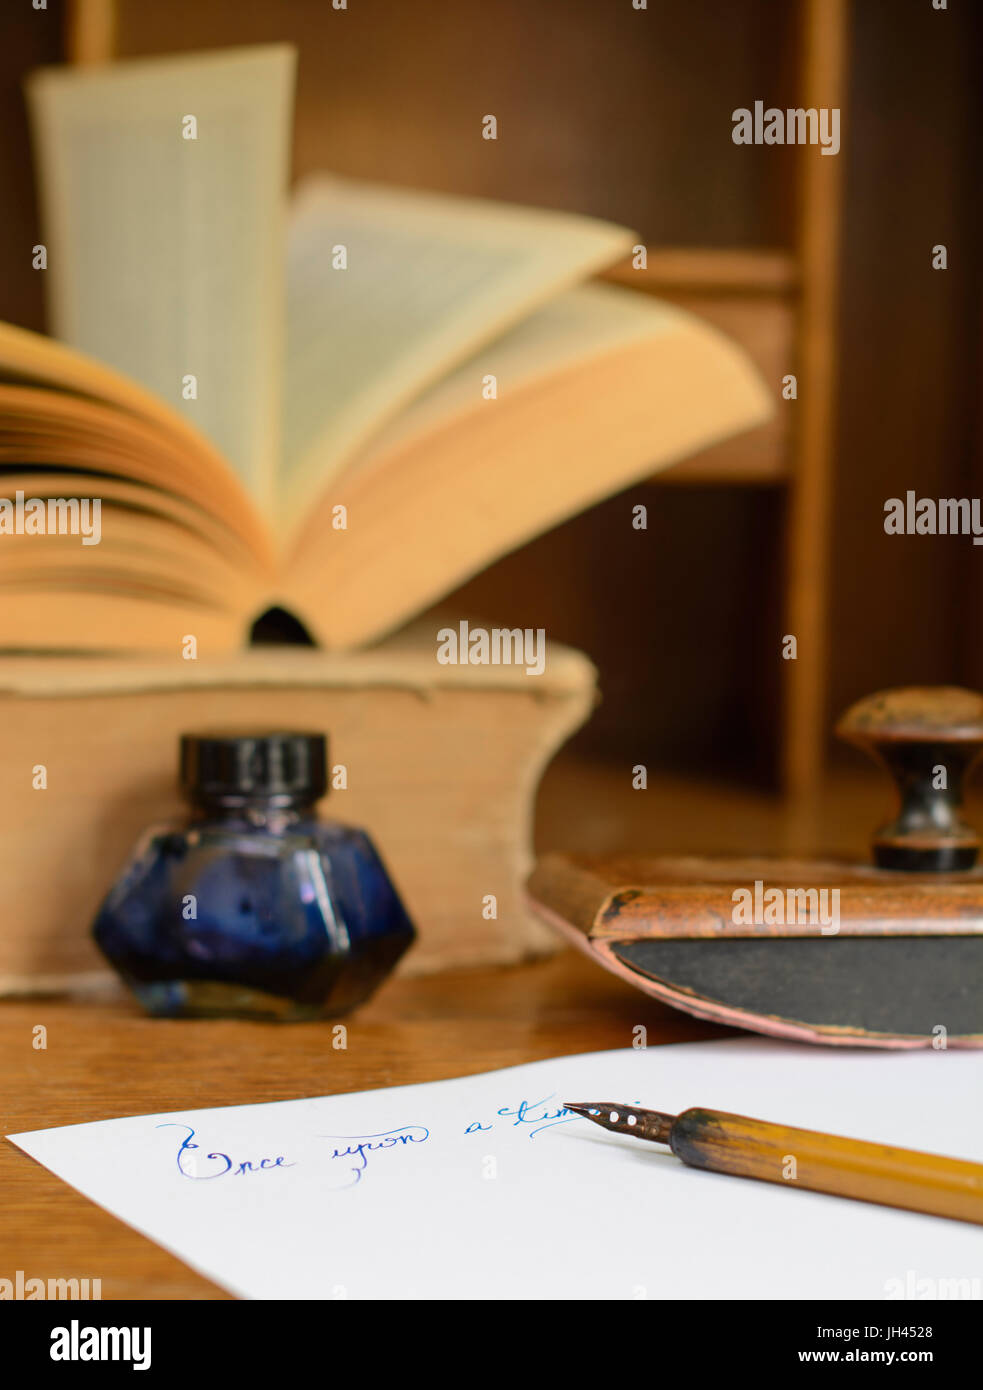 La frase "Una volta" scritto in inchiostro su carta, circondato con un vecchio fermo e libri antichi. Foto Stock